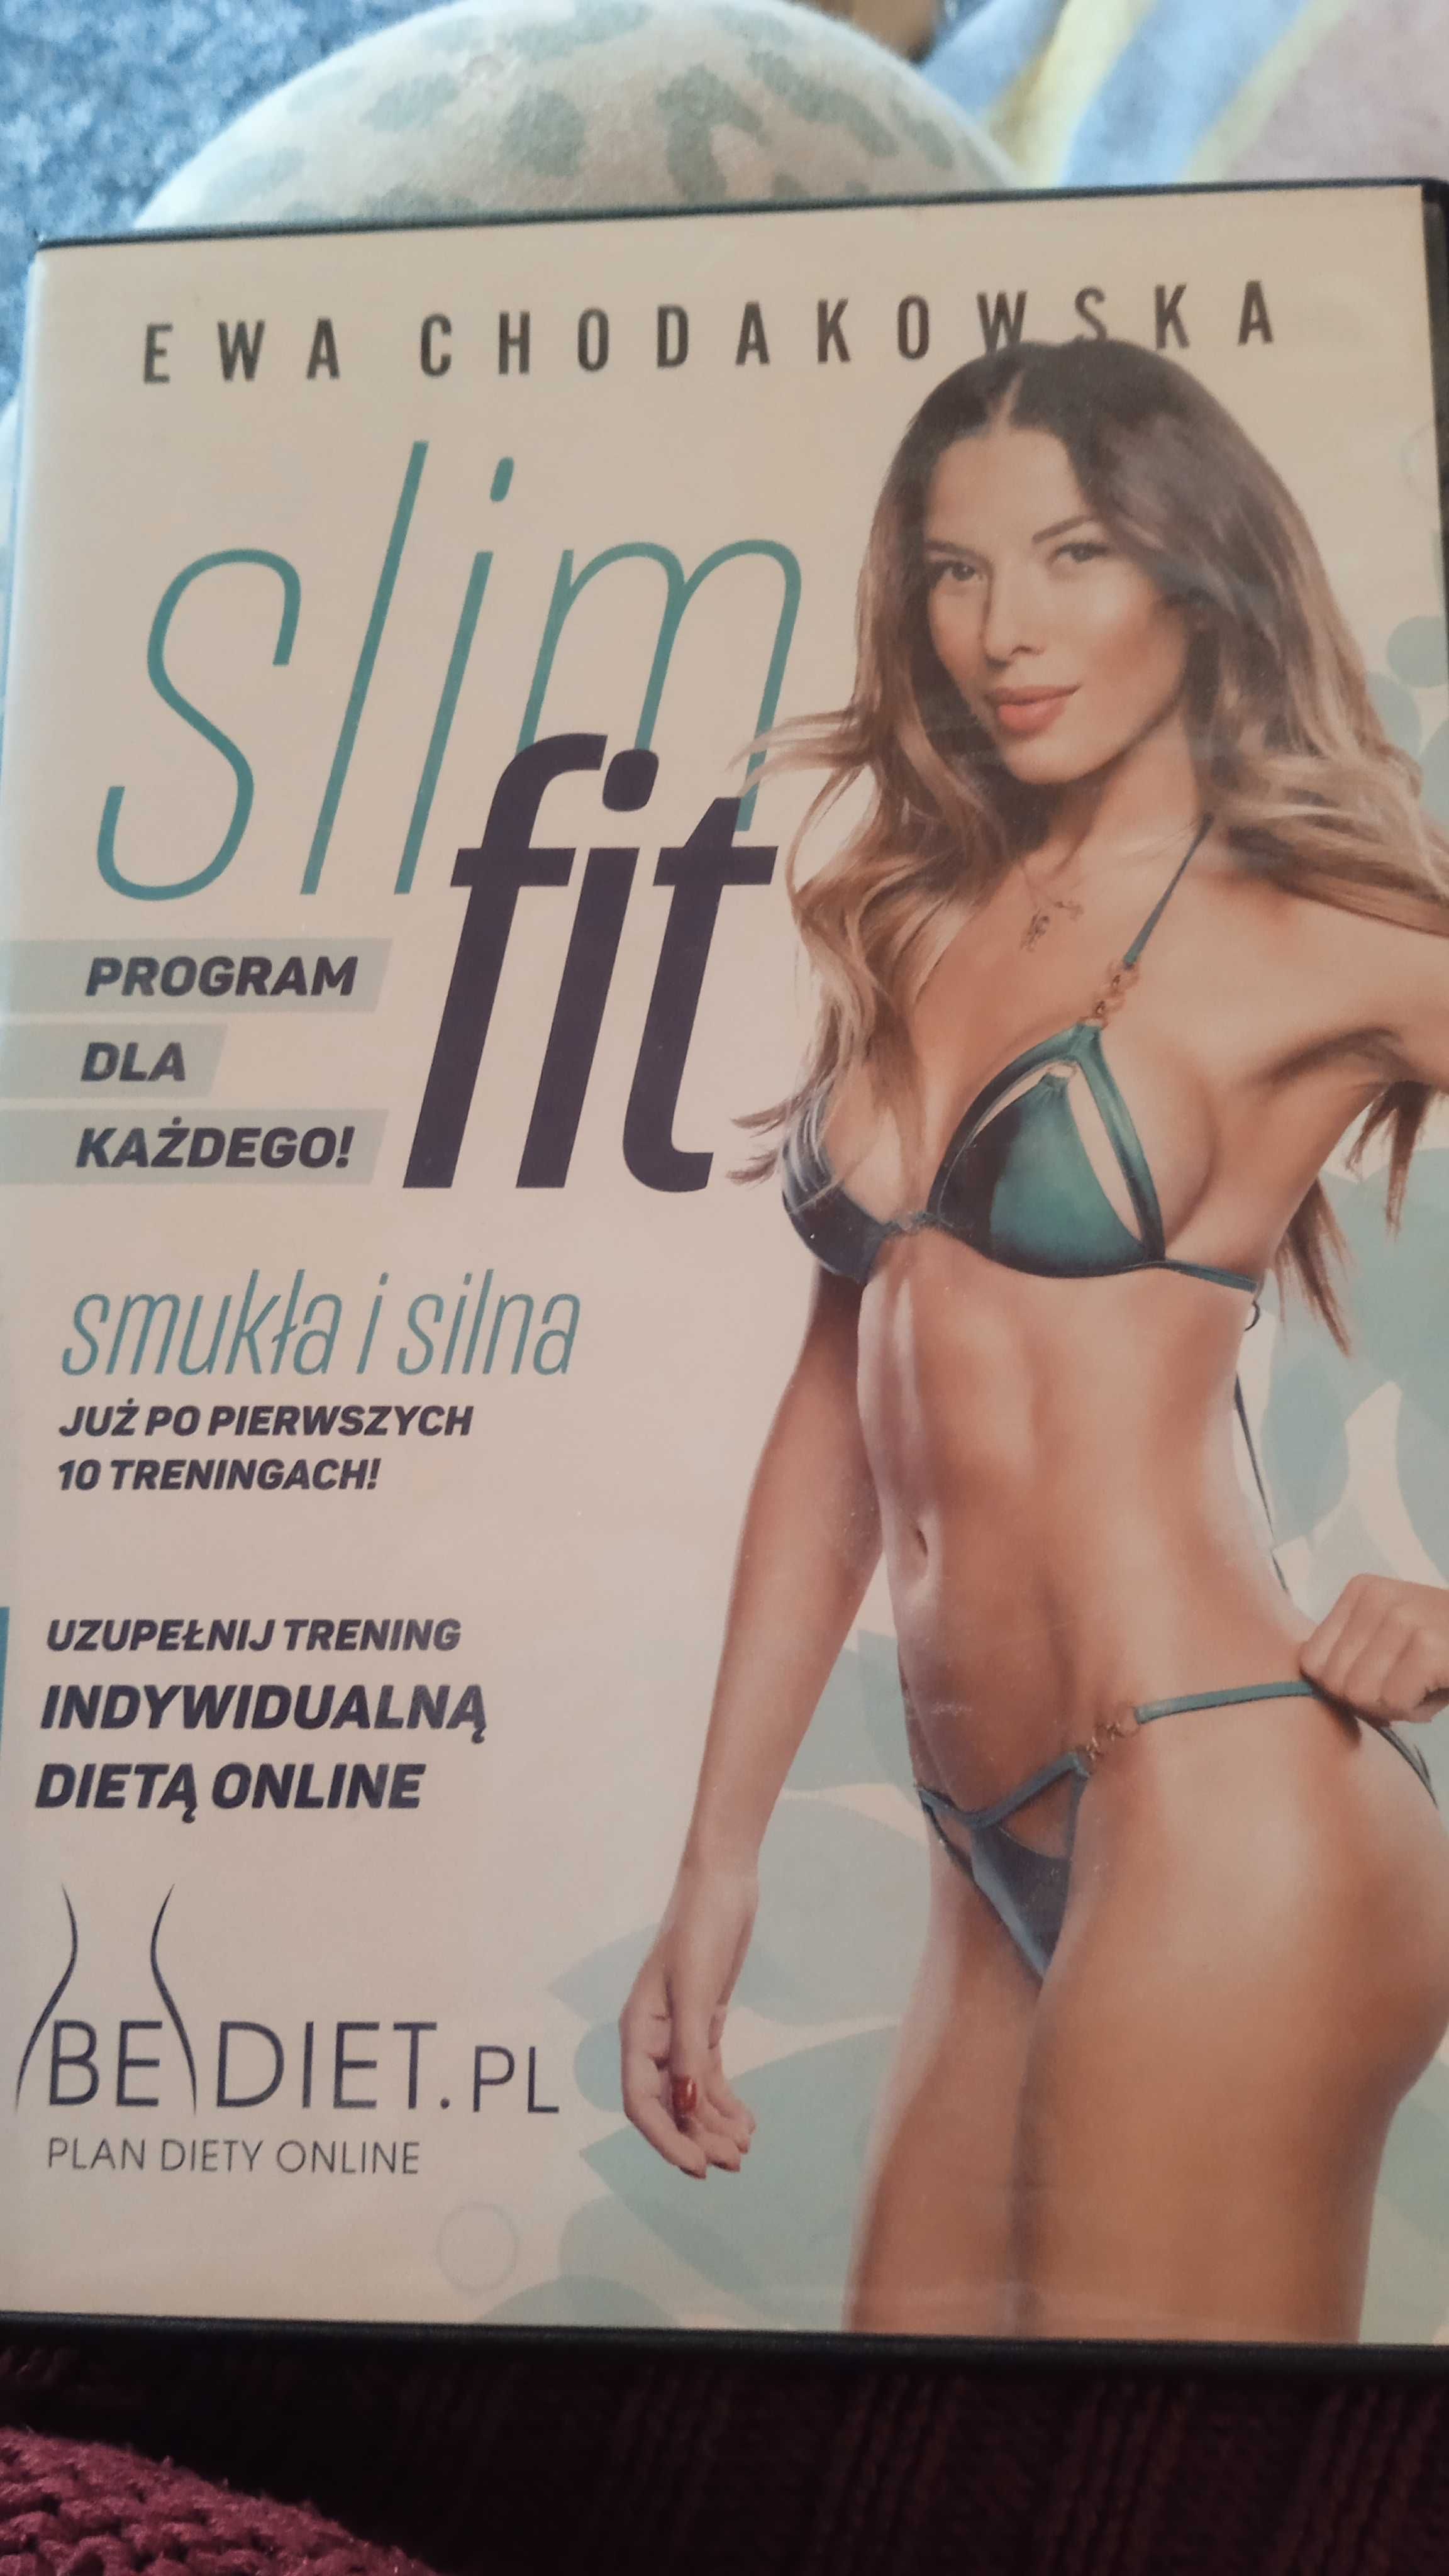 DVD Ewa Chodakowska Slim fit.